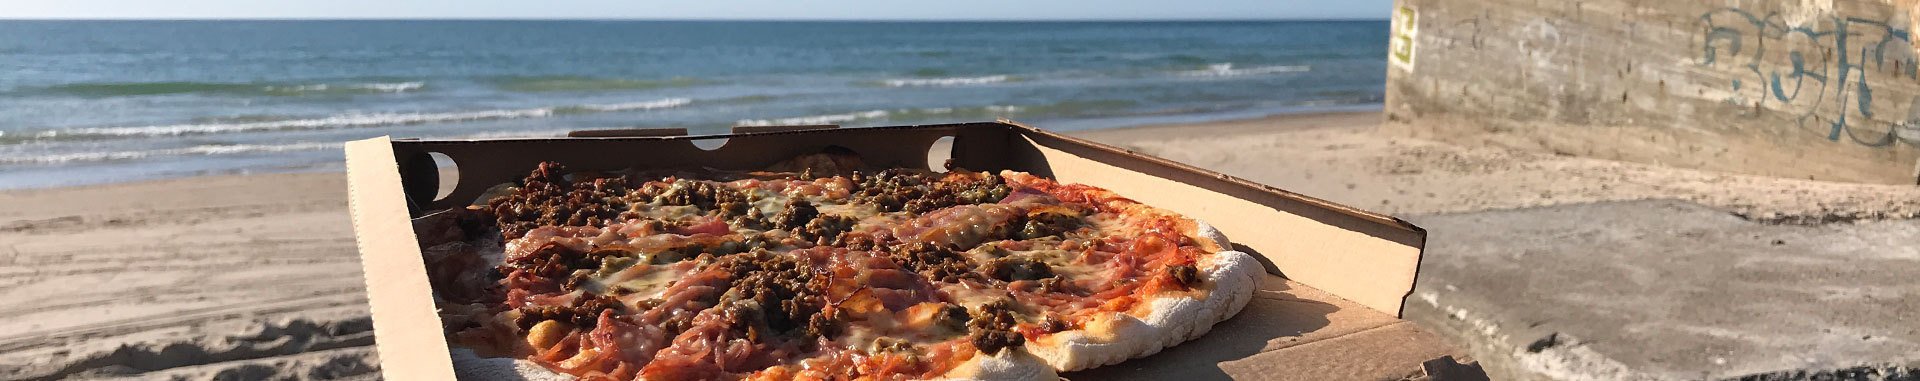 pizza fra palme pizza på stranden